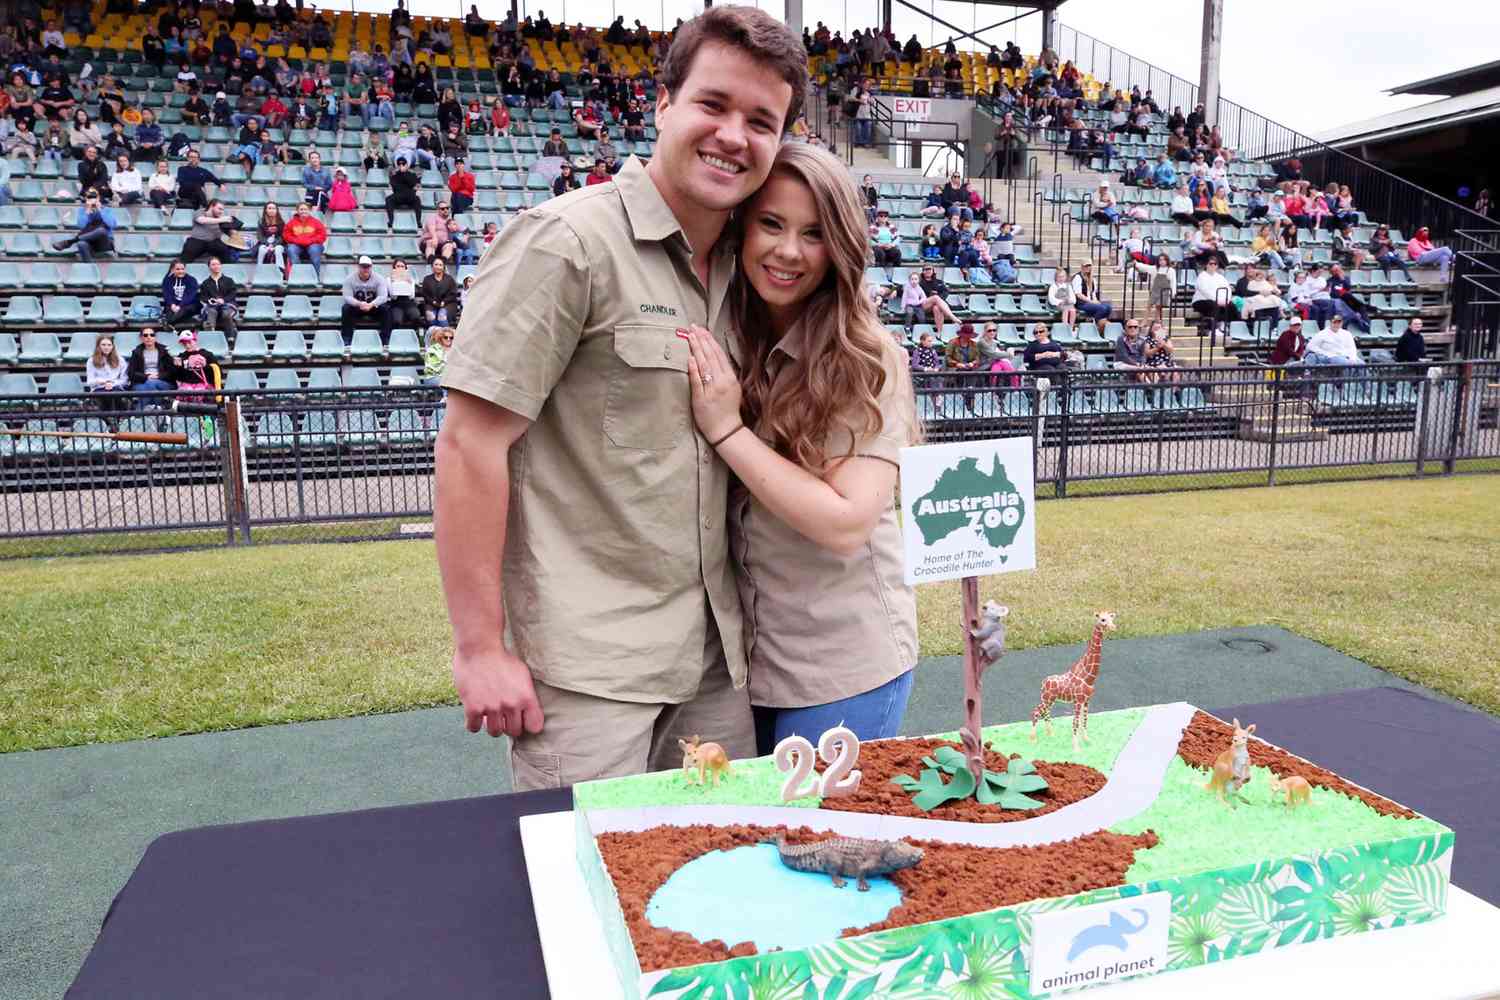 Bindi Irwin celebrates her 22nd birthday at Australia Zoo